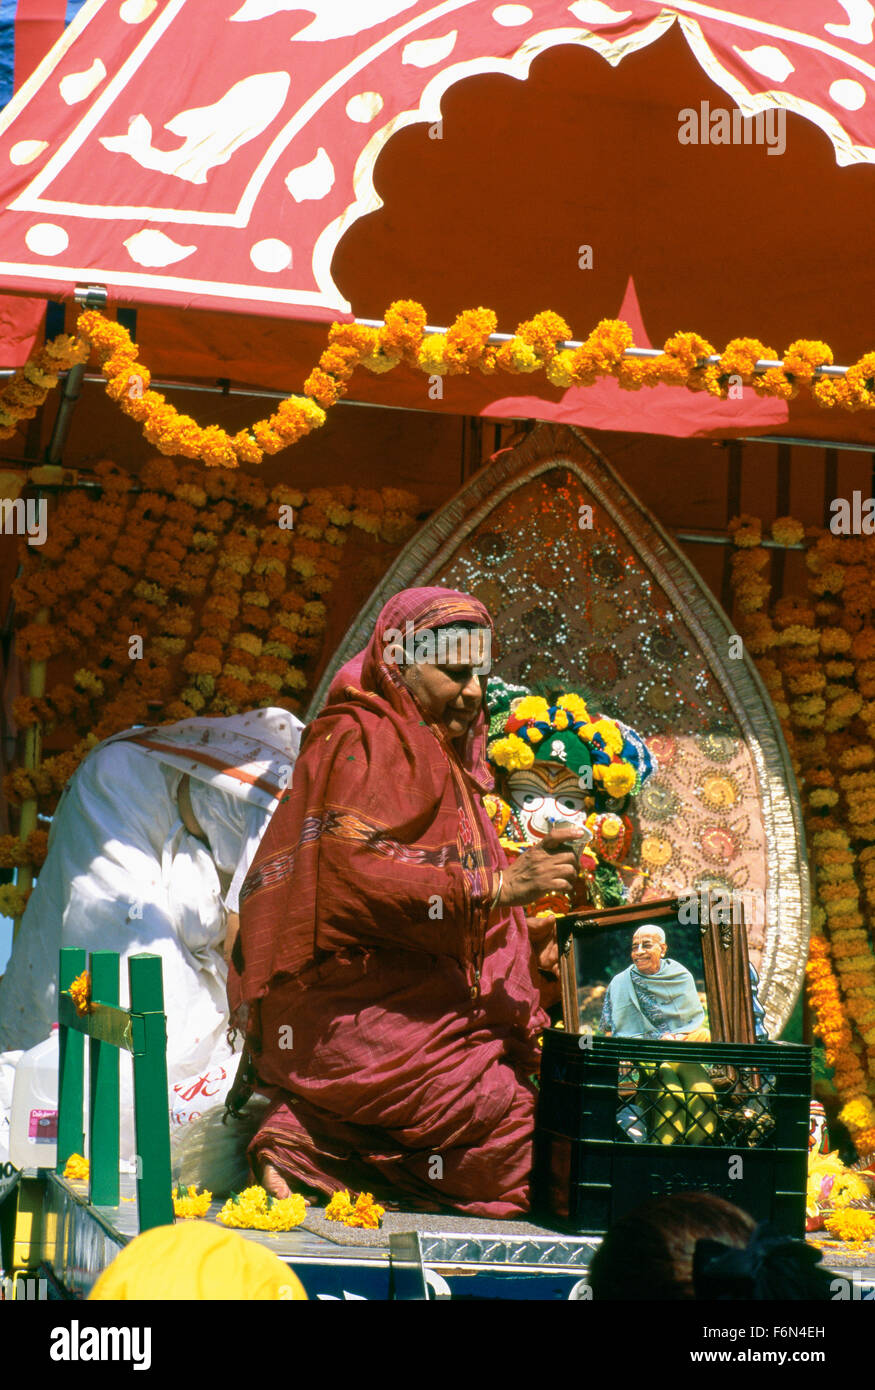 Défilé de chars d'Hare Krishna et Festival de l'Inde, Vancouver, BC - Colombie-Britannique, Canada - dévot adorant Swami Prabhupada Banque D'Images